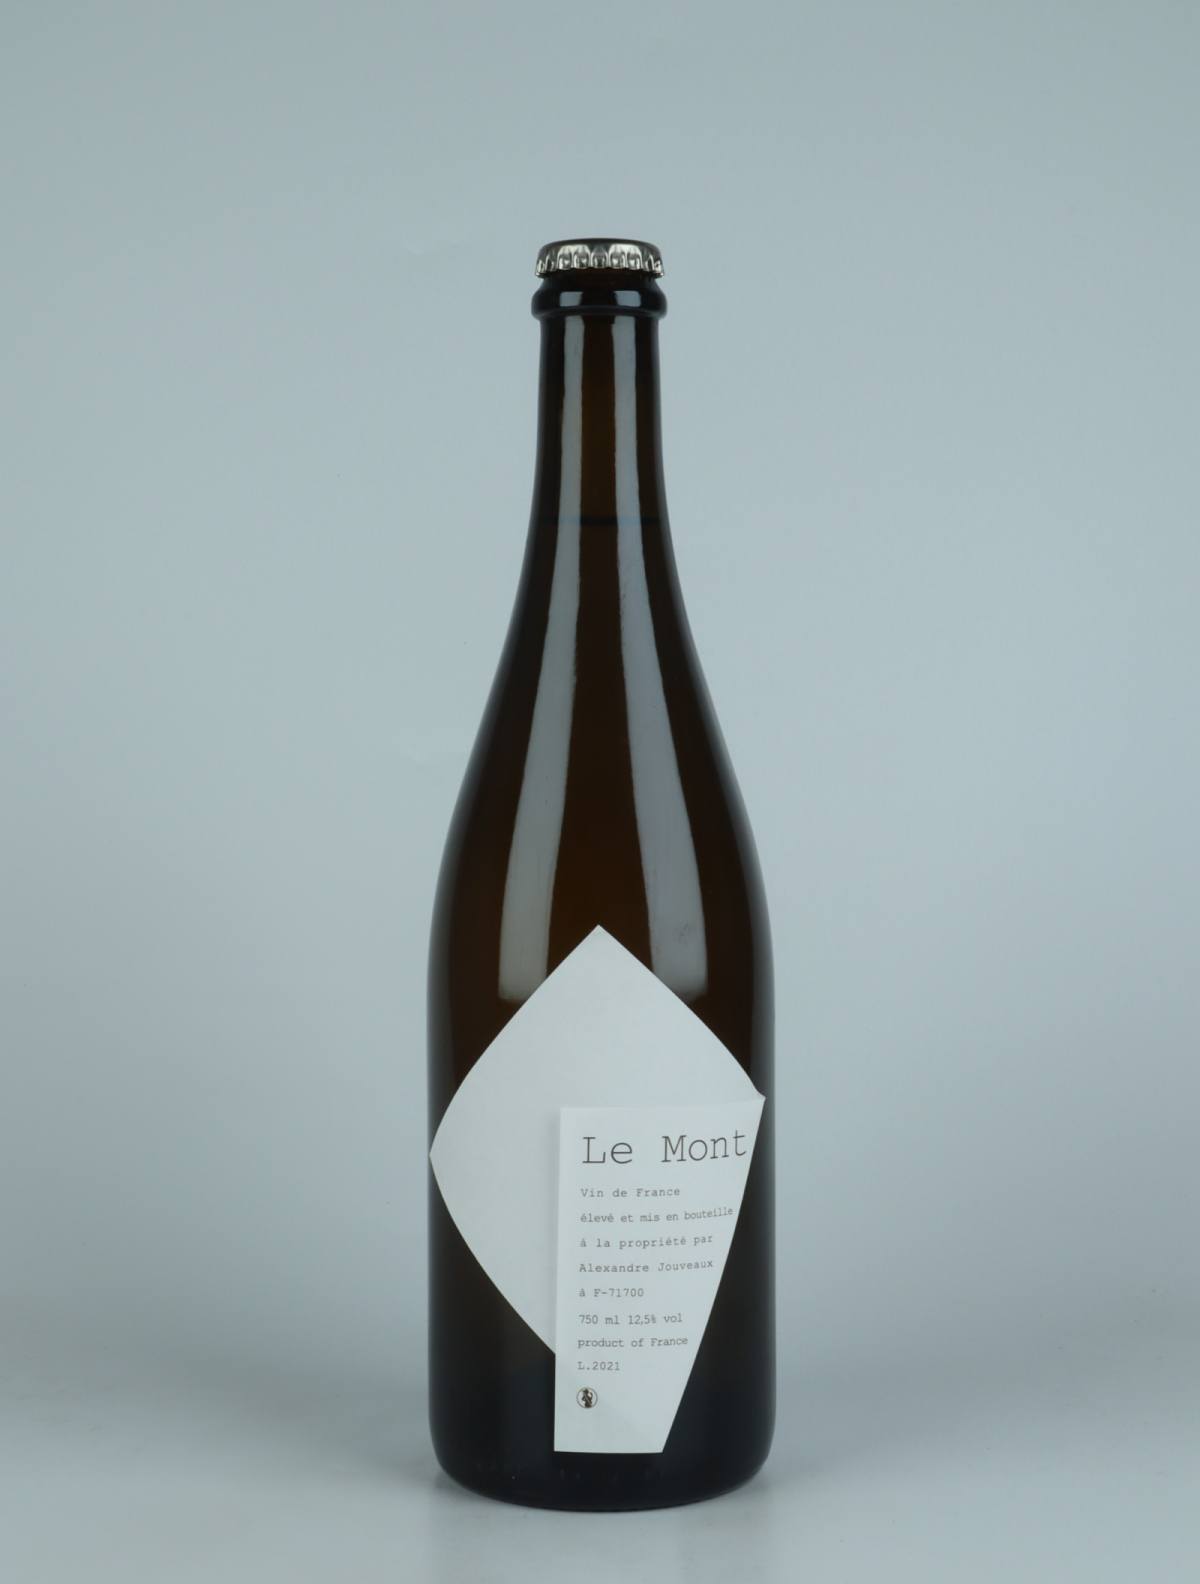 En flaske 2021 Le Mont Hvidvin fra Alexandre Jouveaux, Bourgogne i Frankrig